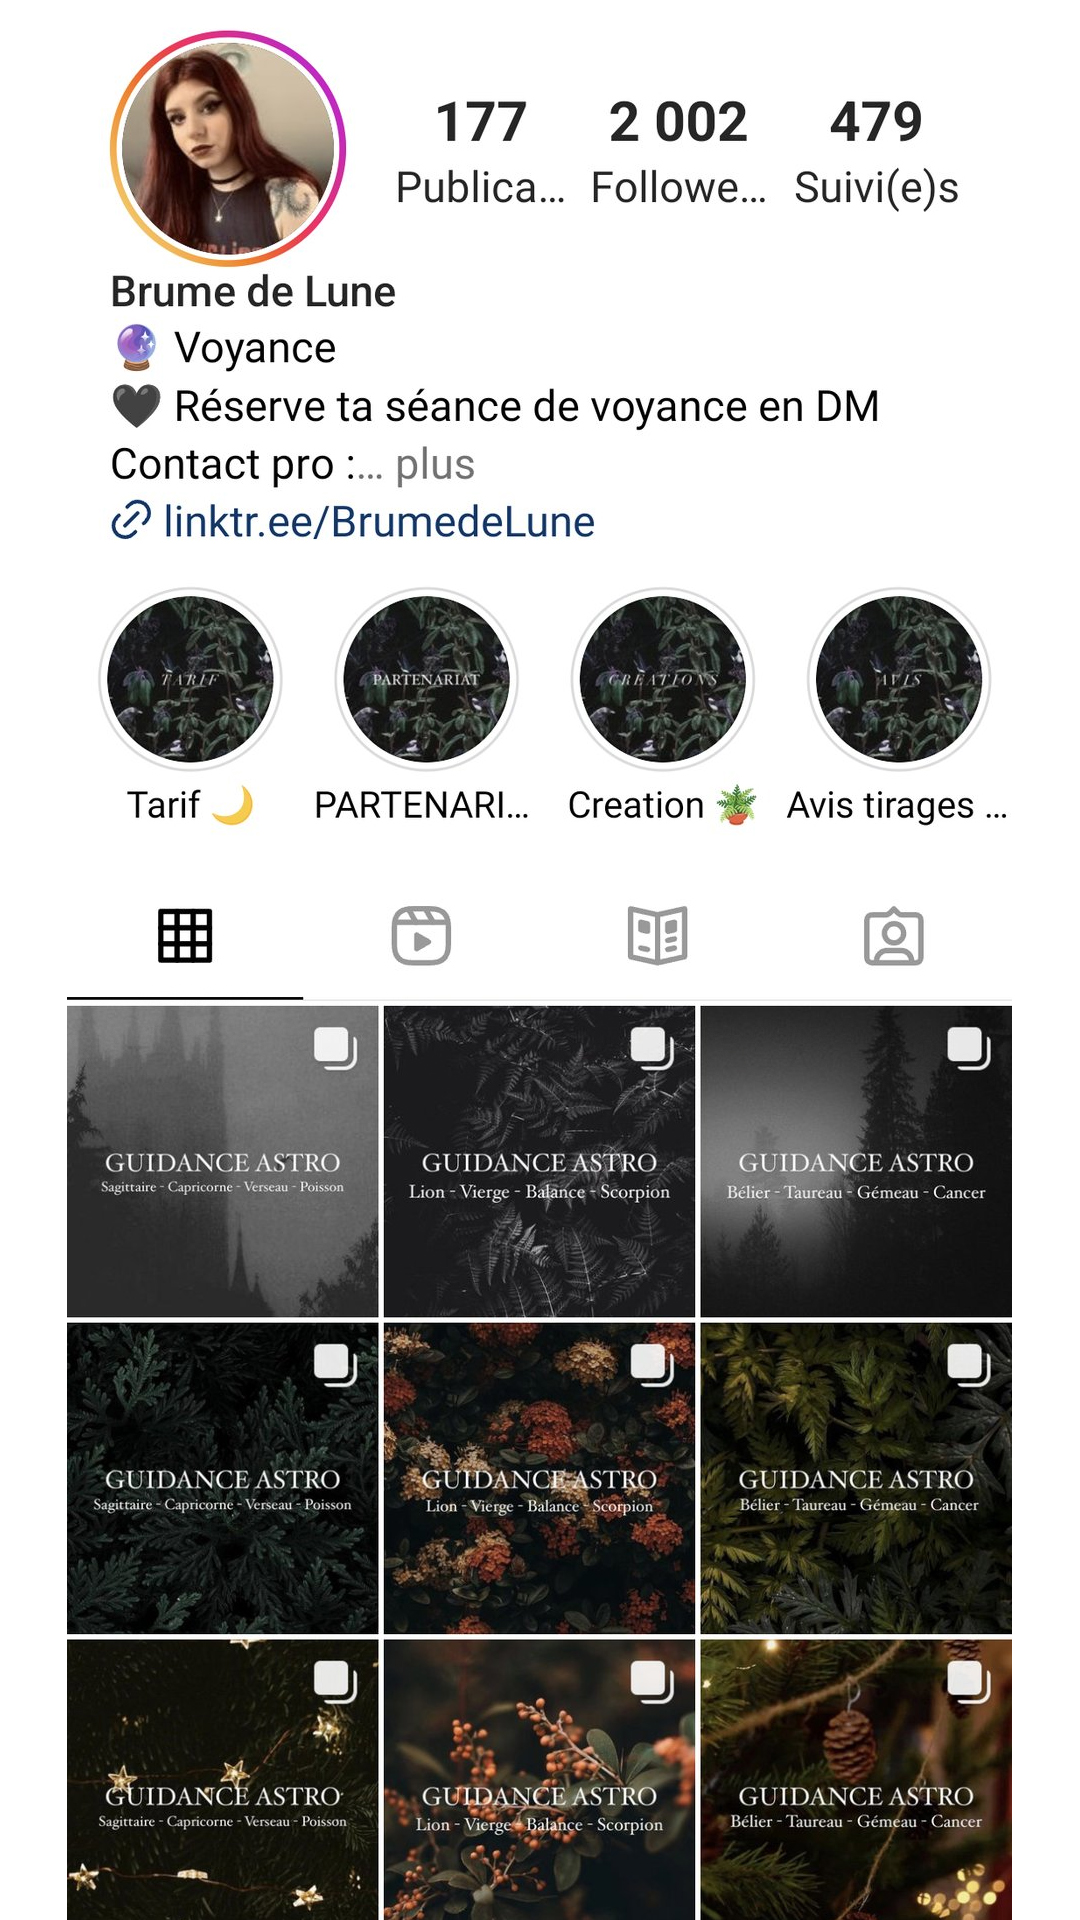 Profil Instagram de Brume De Lune, présentant brièvement son contenu